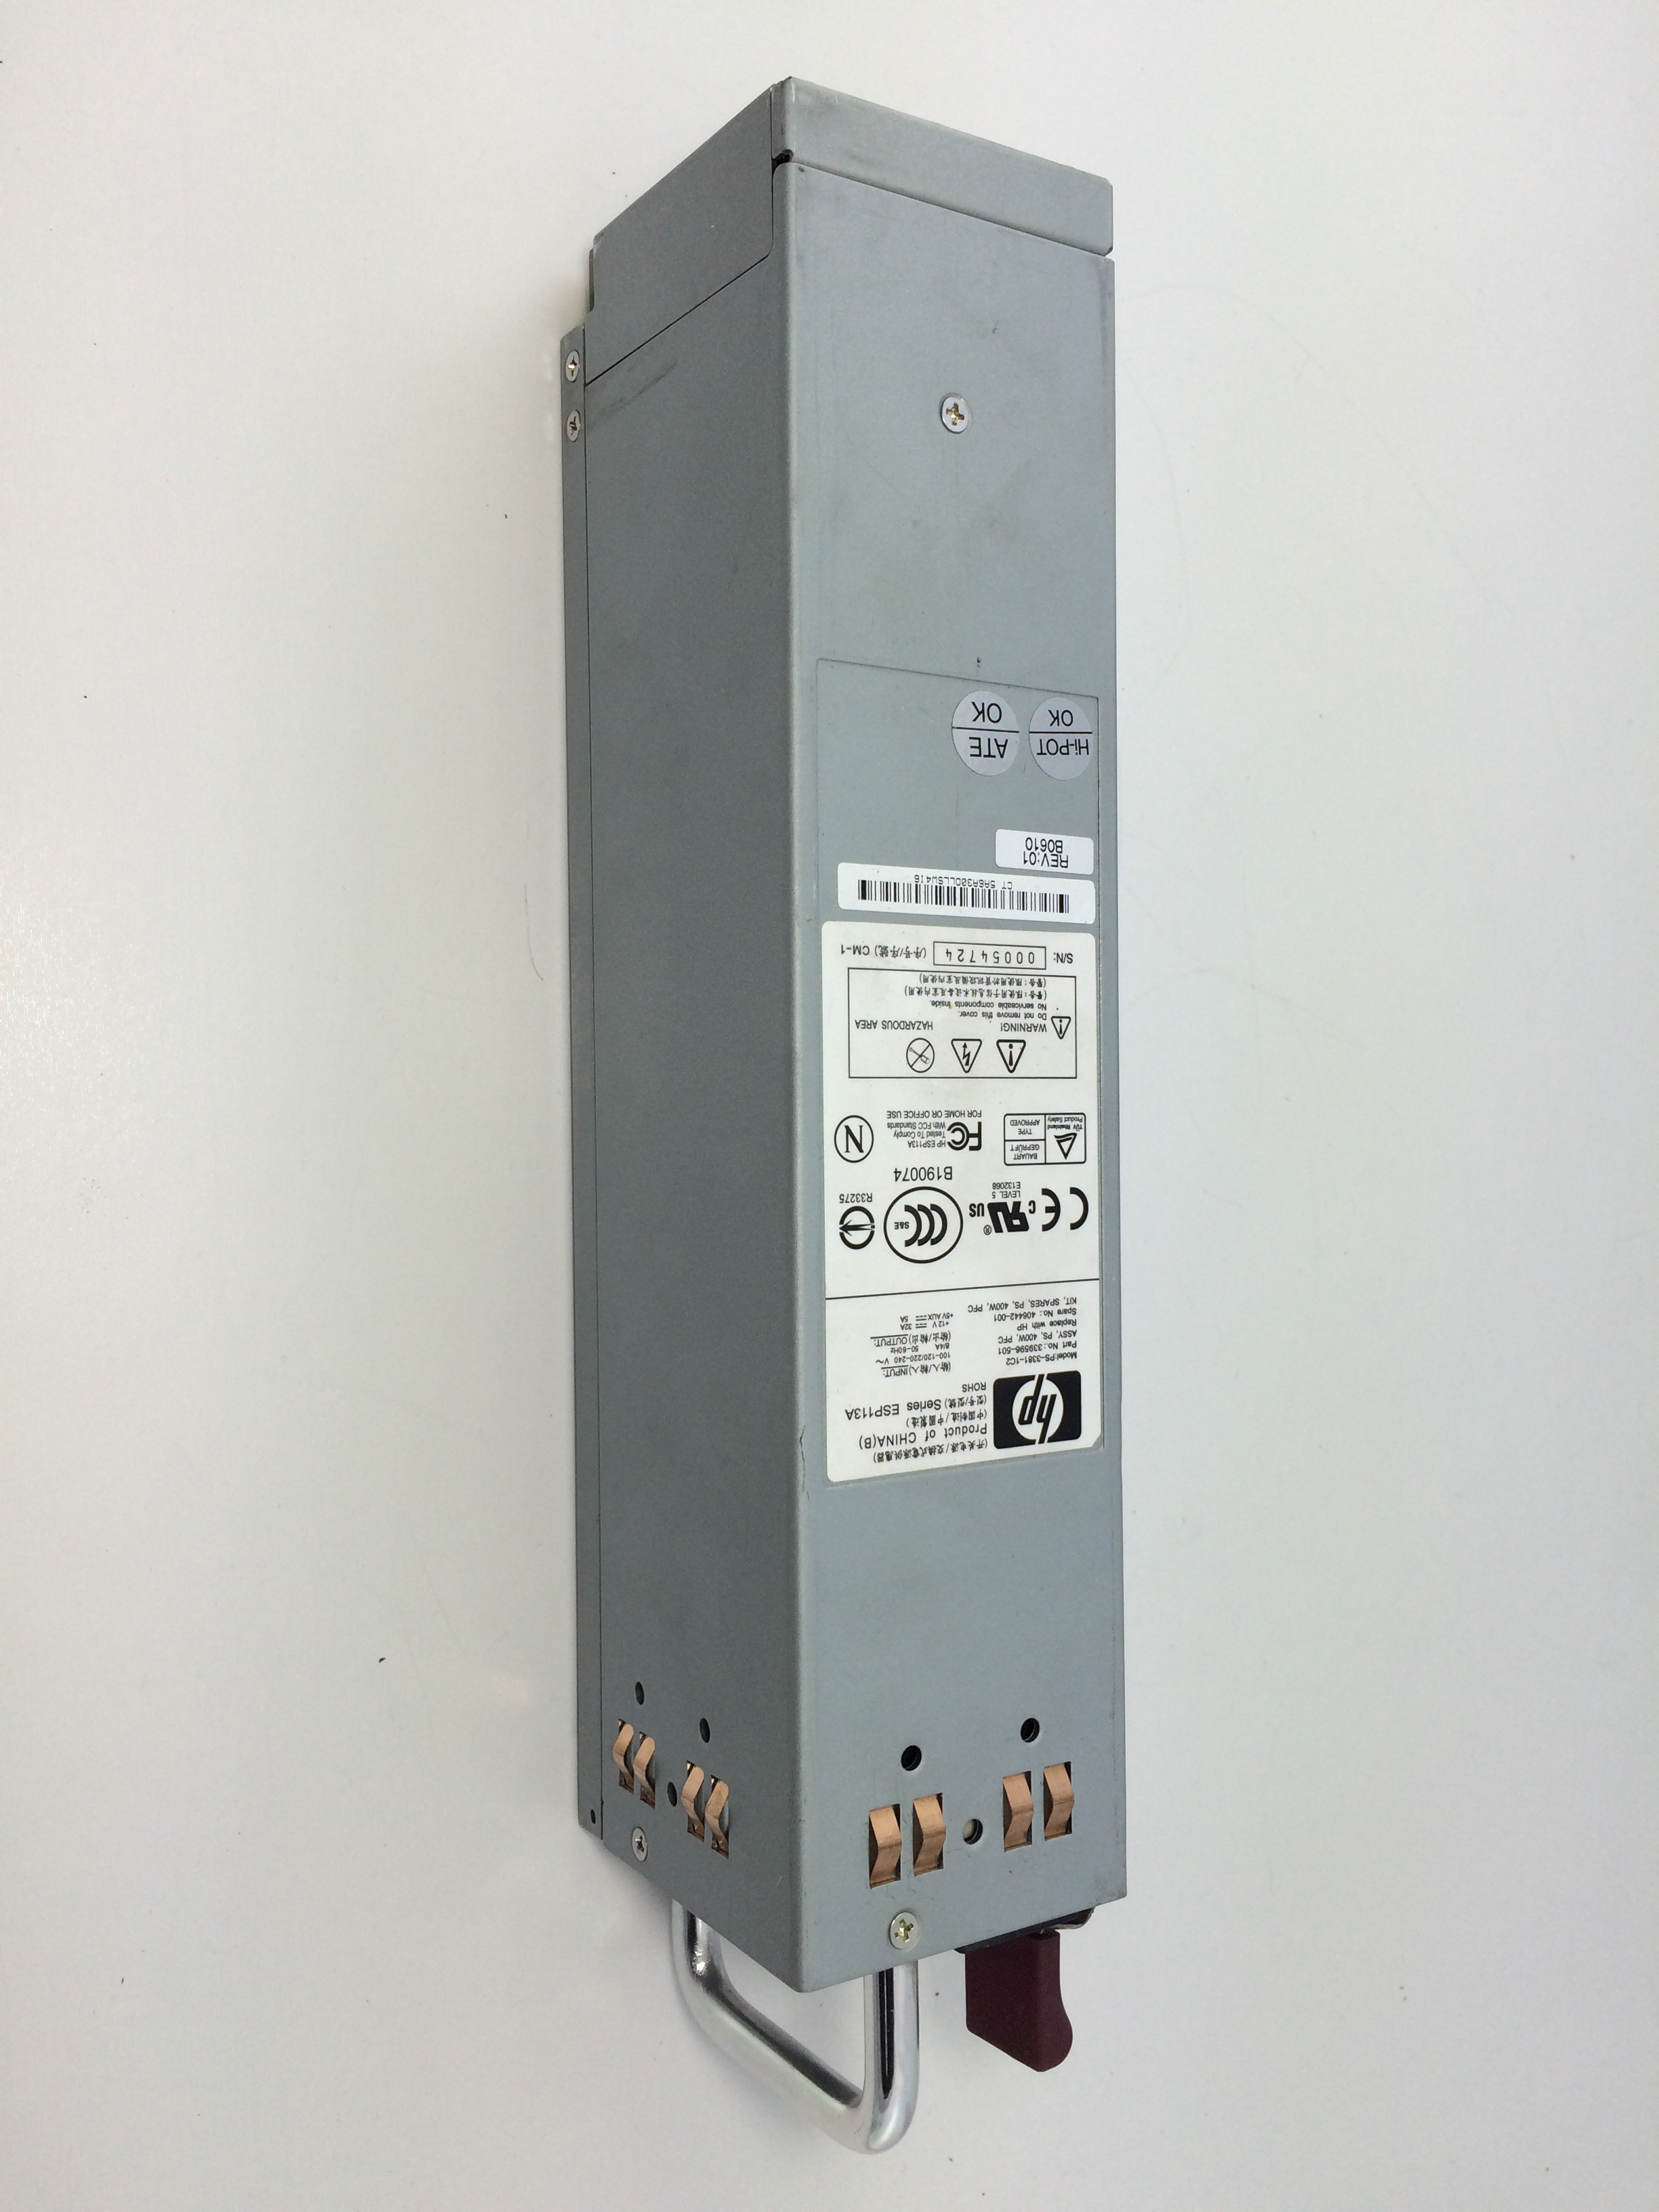 Eva8000 Hot-Pluggable Power Supply Msa70 (406442-001)